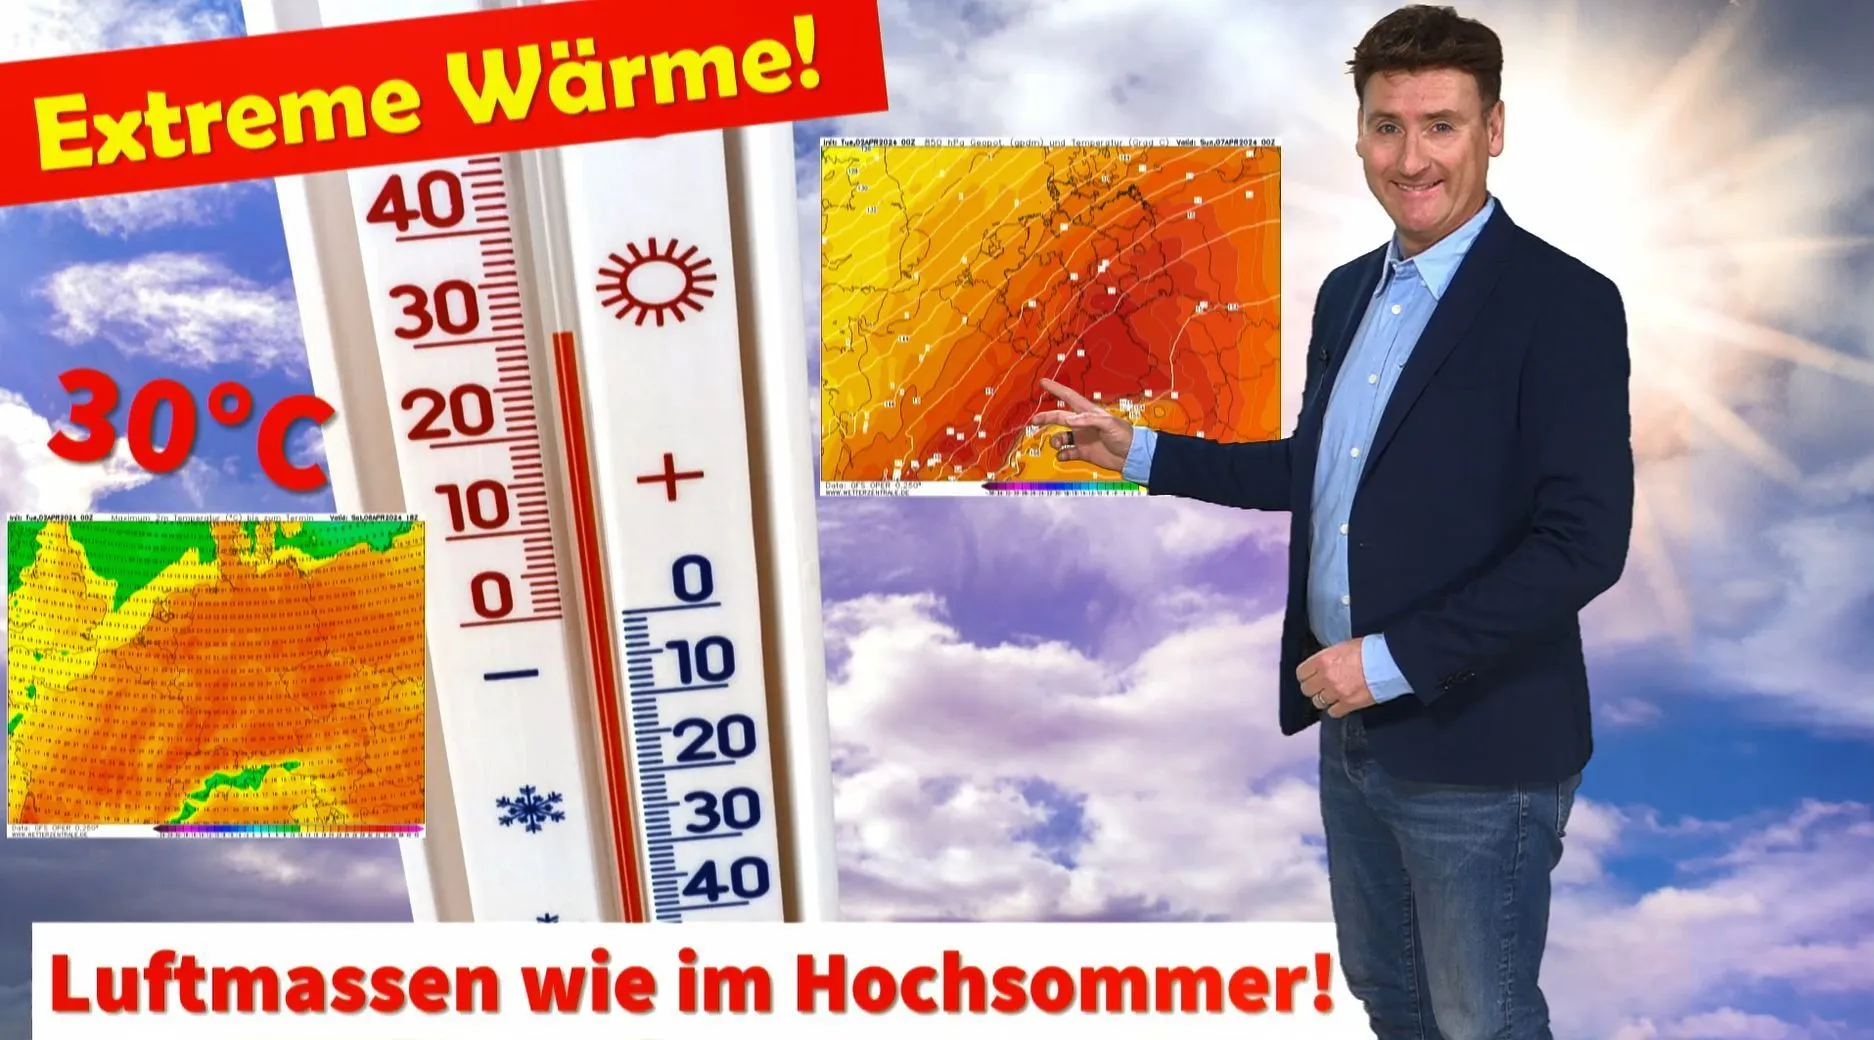 Des cartes météorologiques absurdes : près de 30°C possibles en Allemagne le premier week-end d'avril ! Nouvelle poussière du Sahara !